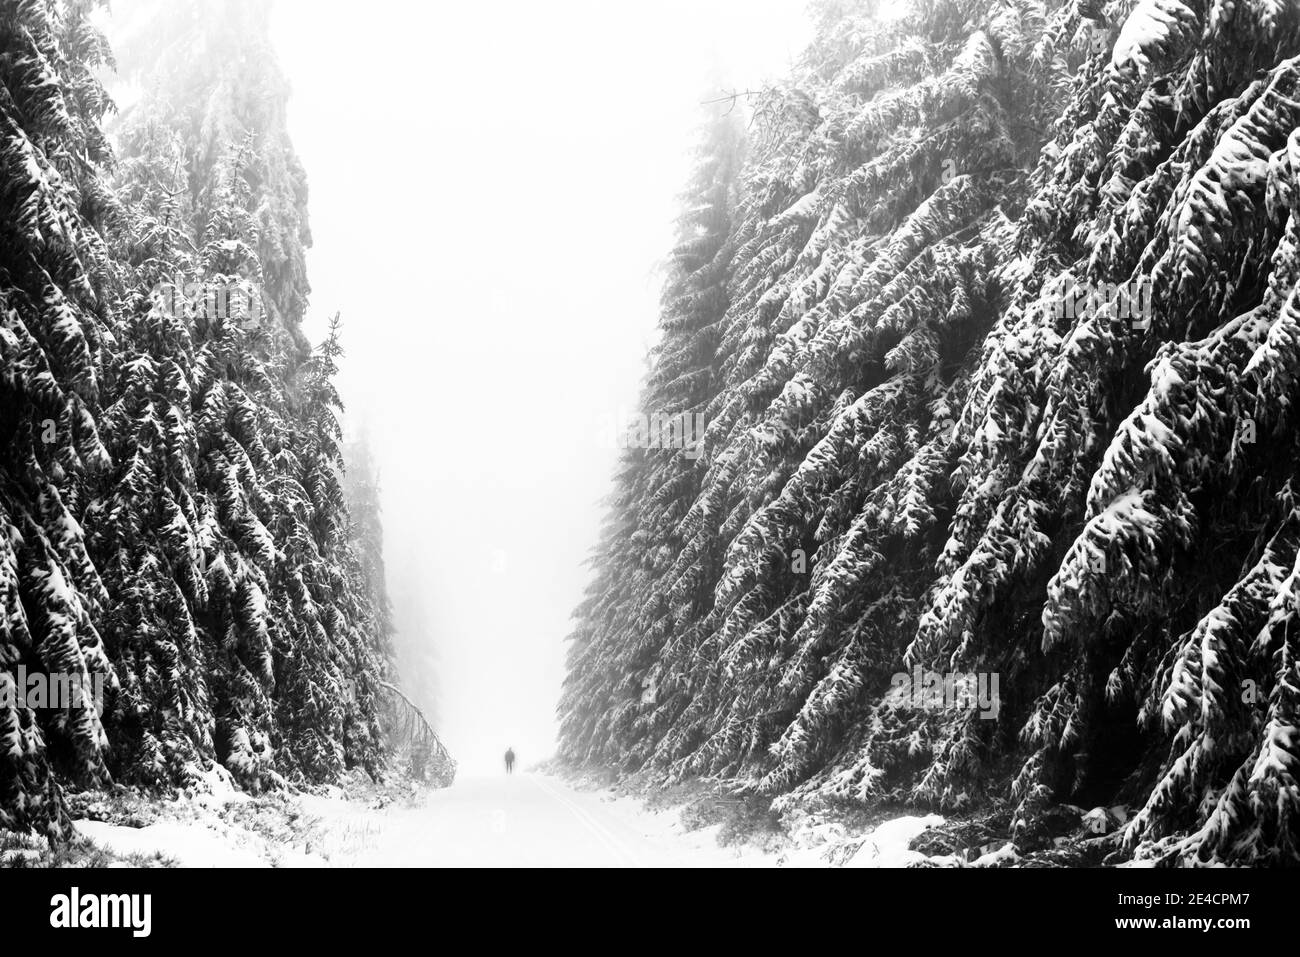 Germania, Baden-Wuerttemberg, Foresta Nera, Kaltenbronn, sci di fondo in pista nella foresta innevata di abeti Foto Stock